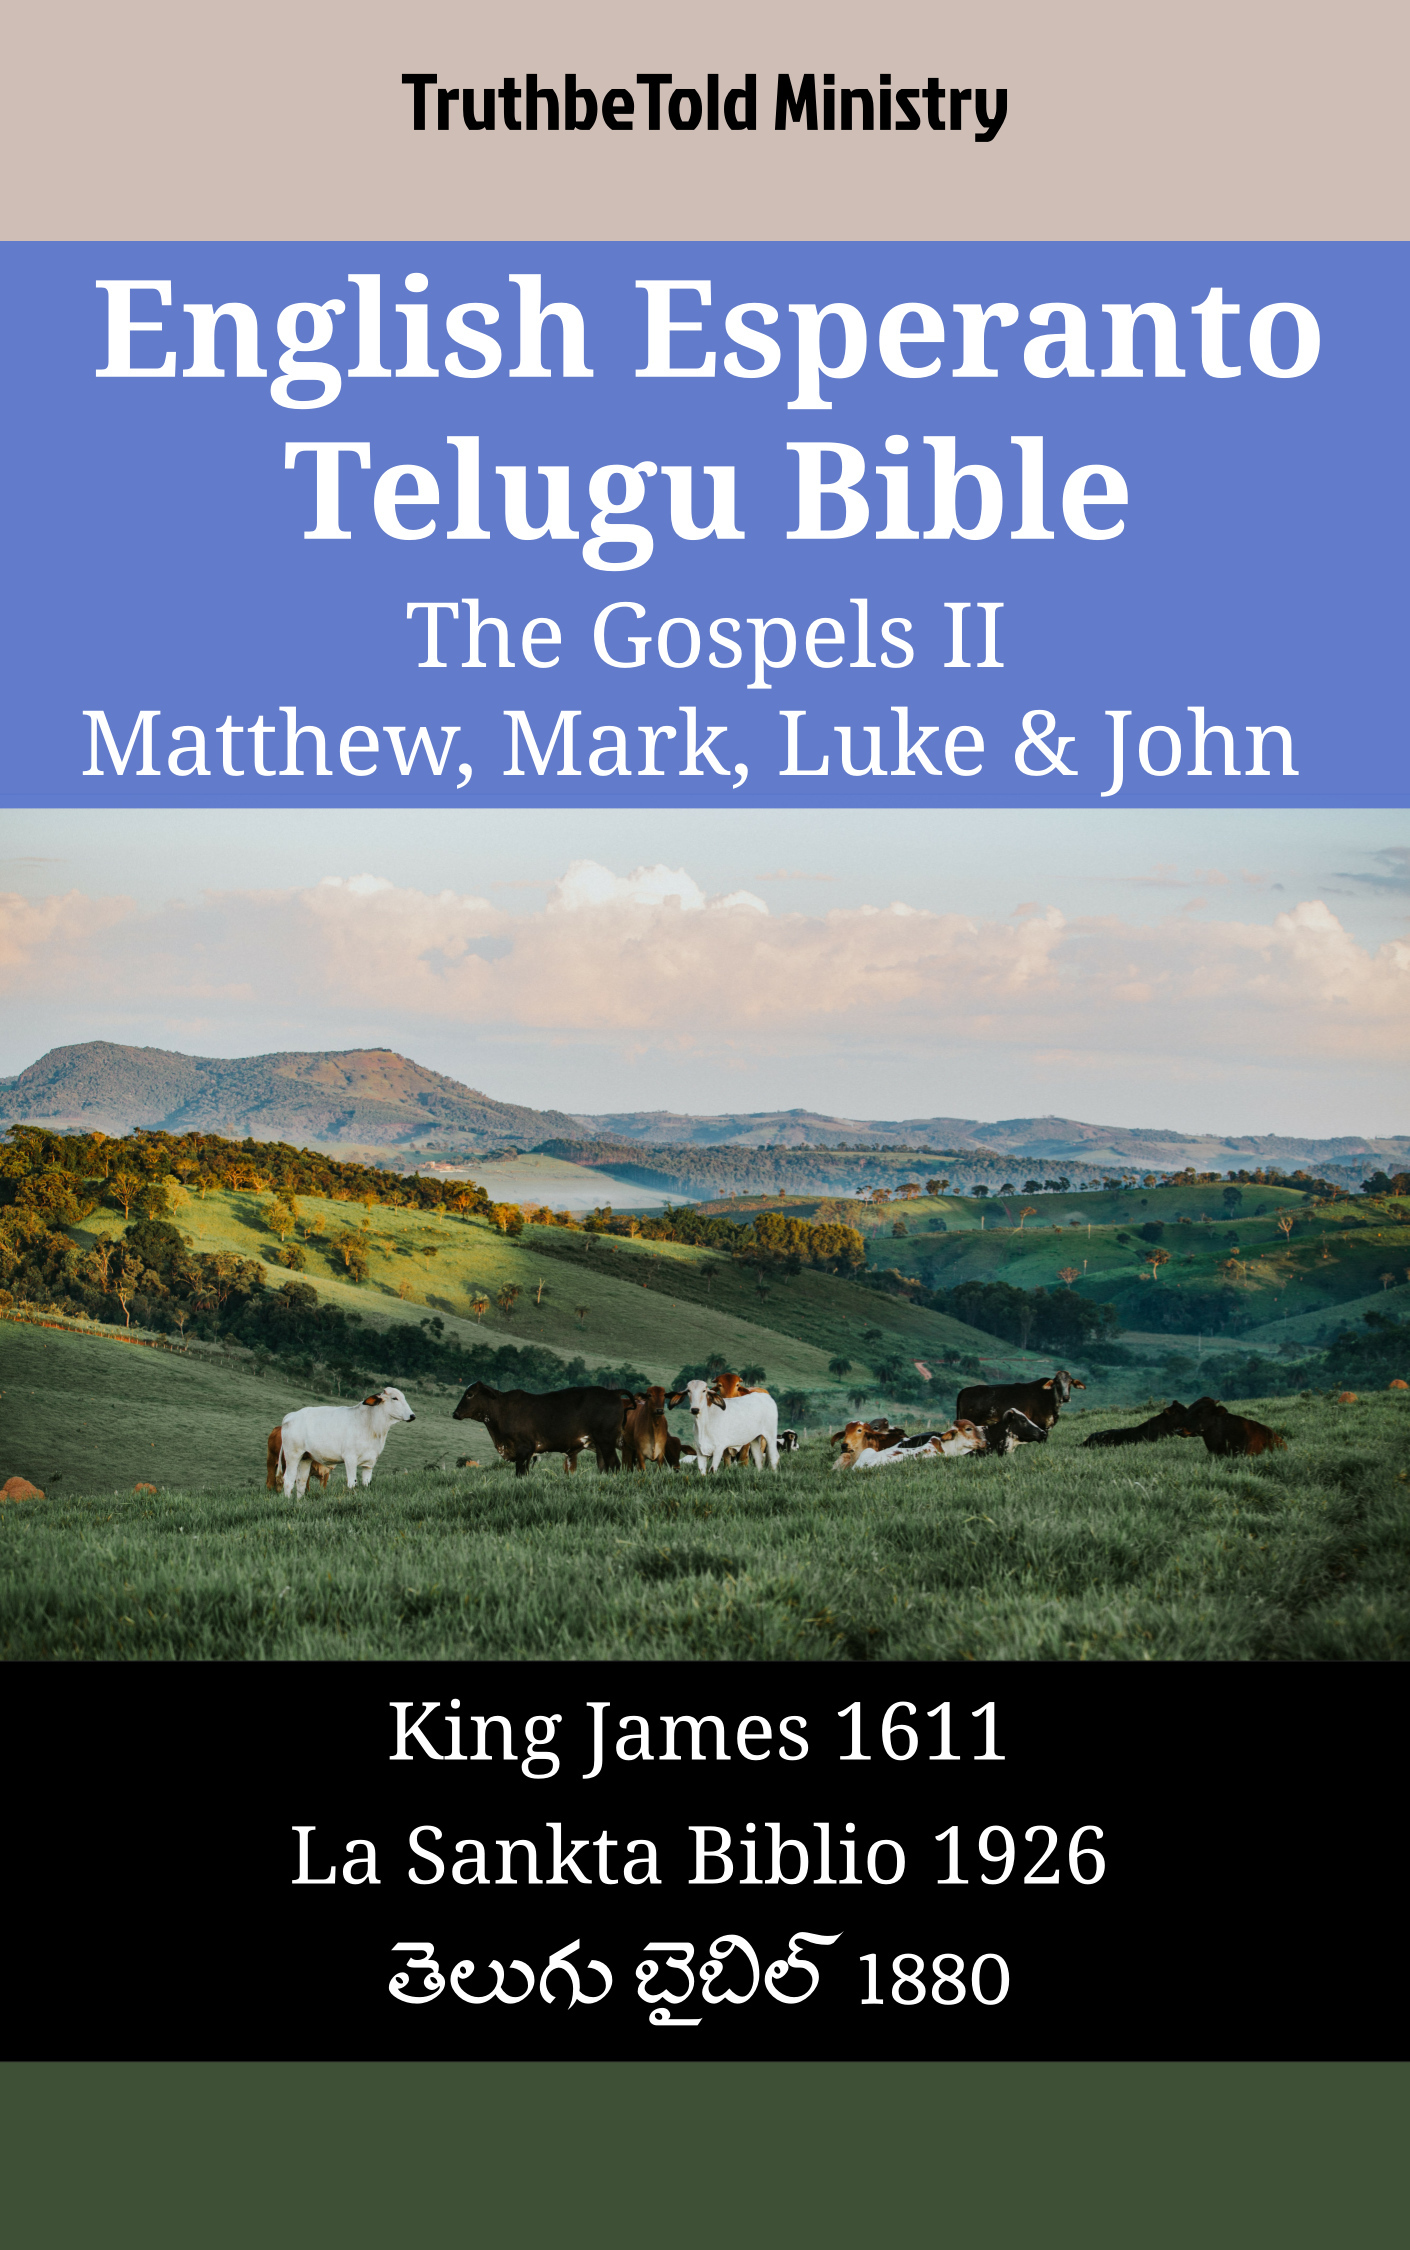 English Esperanto Telugu Bible - The Gospels II - Matthew, Mark, Luke & John